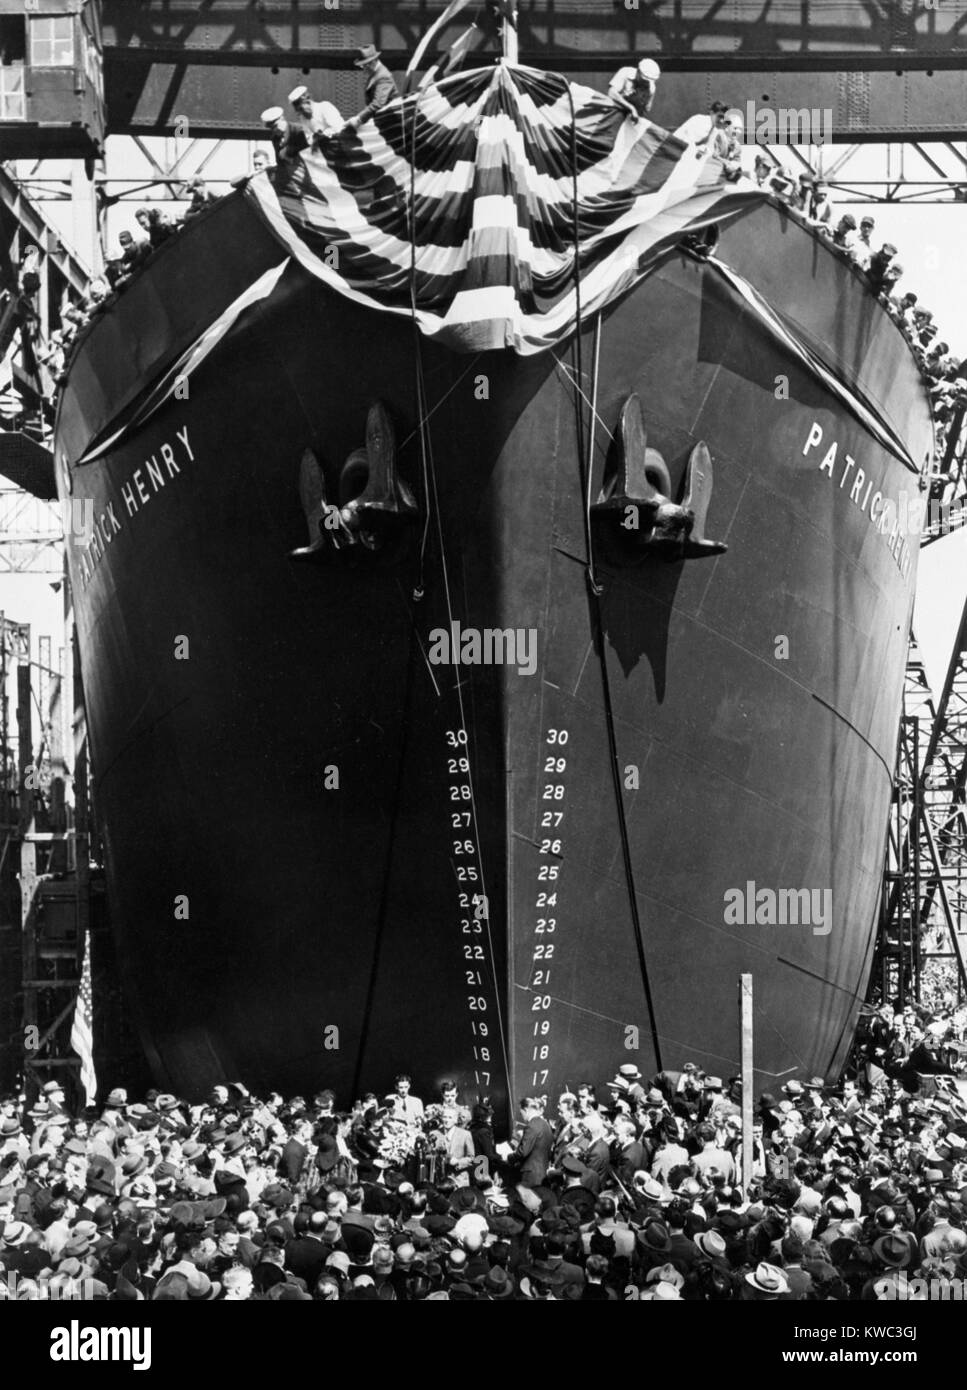 SS Patrick Henry ist das erste Liberty Ship am Sept. 27, 1941. Während des Zweiten Weltkrieges machte sie 12 Reisen zu Häfen einschließlich Murmansk, Trinidad, Kapstadt, Neapel und Dakar. Bethlehem-Fairfield Werft in Baltimore, Maryland. (BSLOC 2015 13 98) Stockfoto